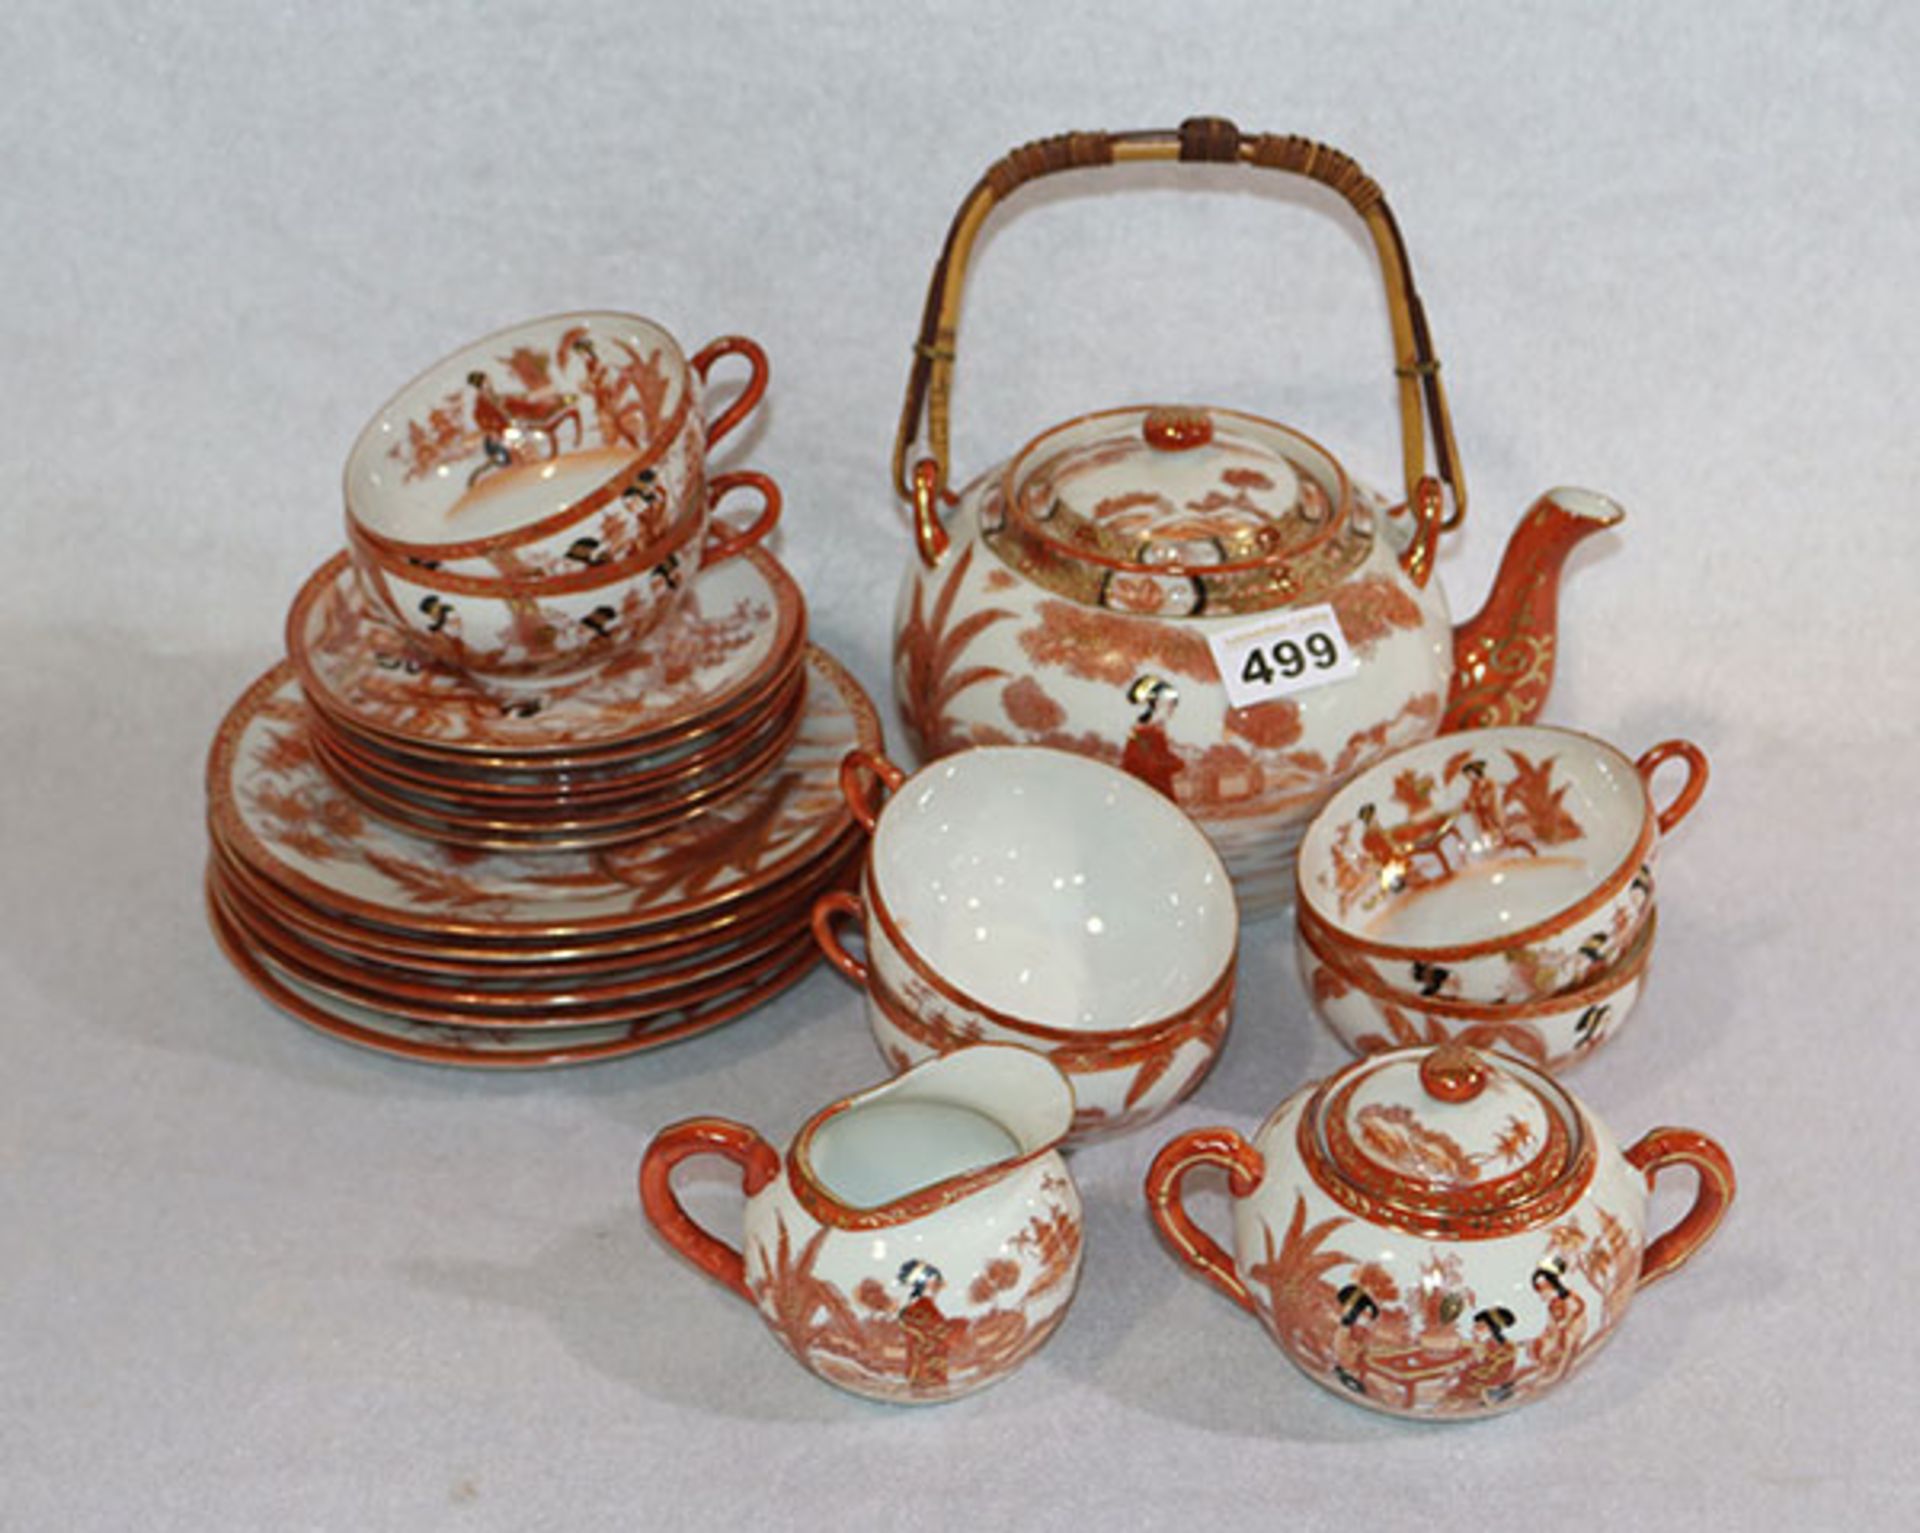 Asiatisches Tee-Service mit figürlichen Darstellungen, Teekanne, Milch und Zucker, 6 Tassen mit